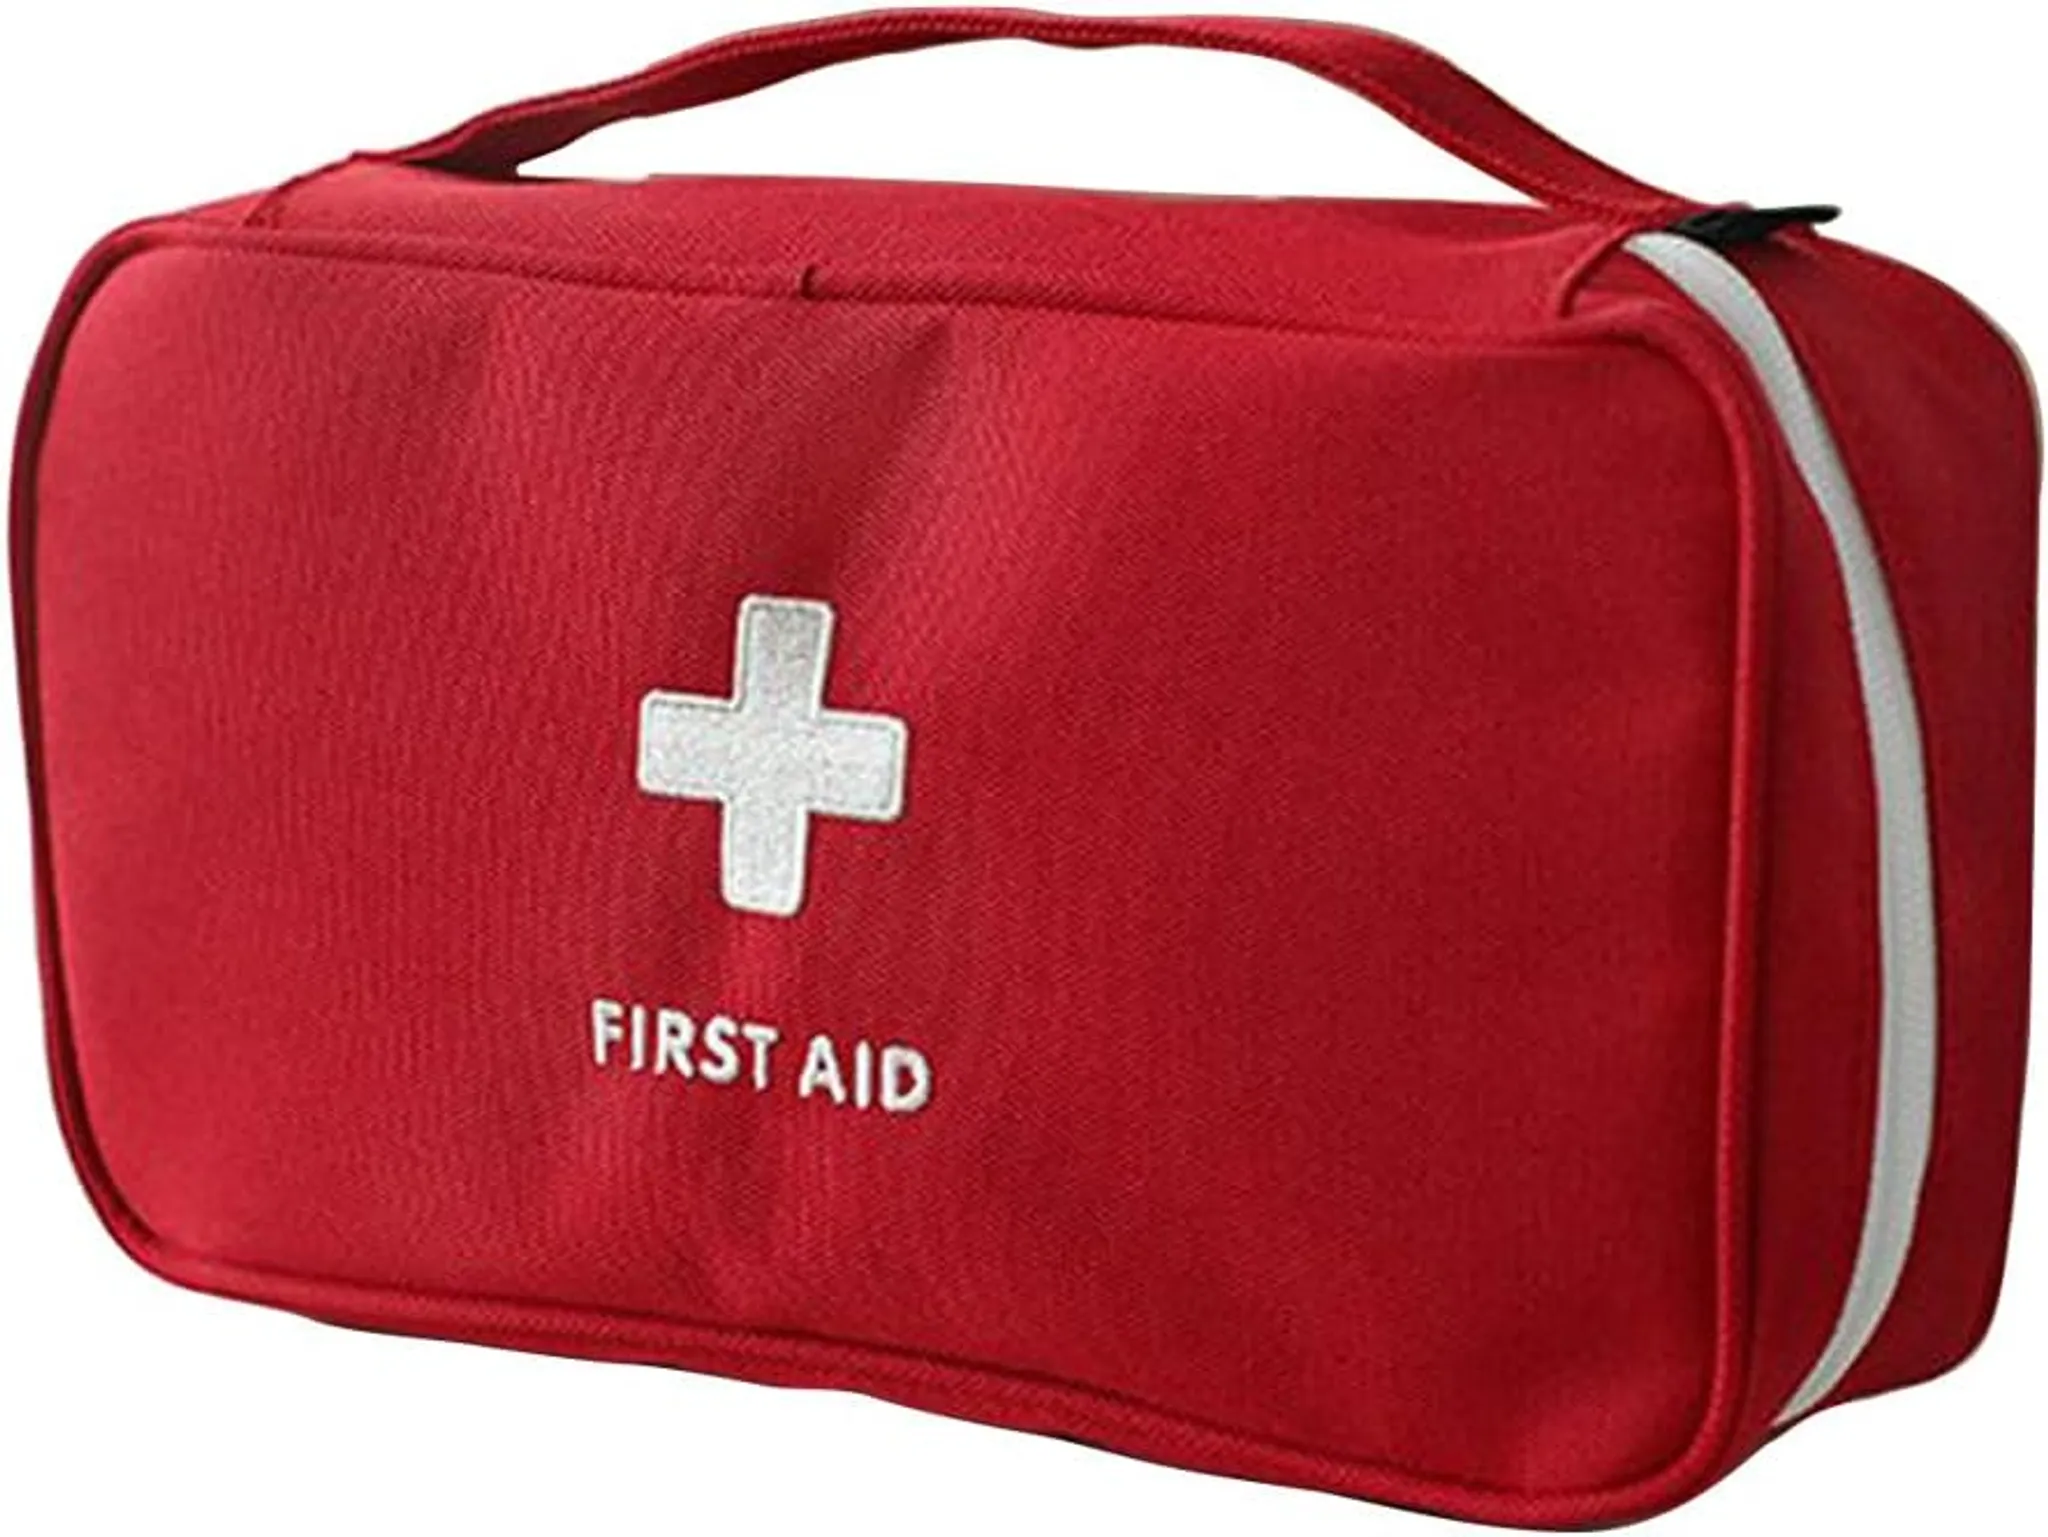 Notfall Erste-hilfe Tasche, Große Medizin Aufbewahrungstasche